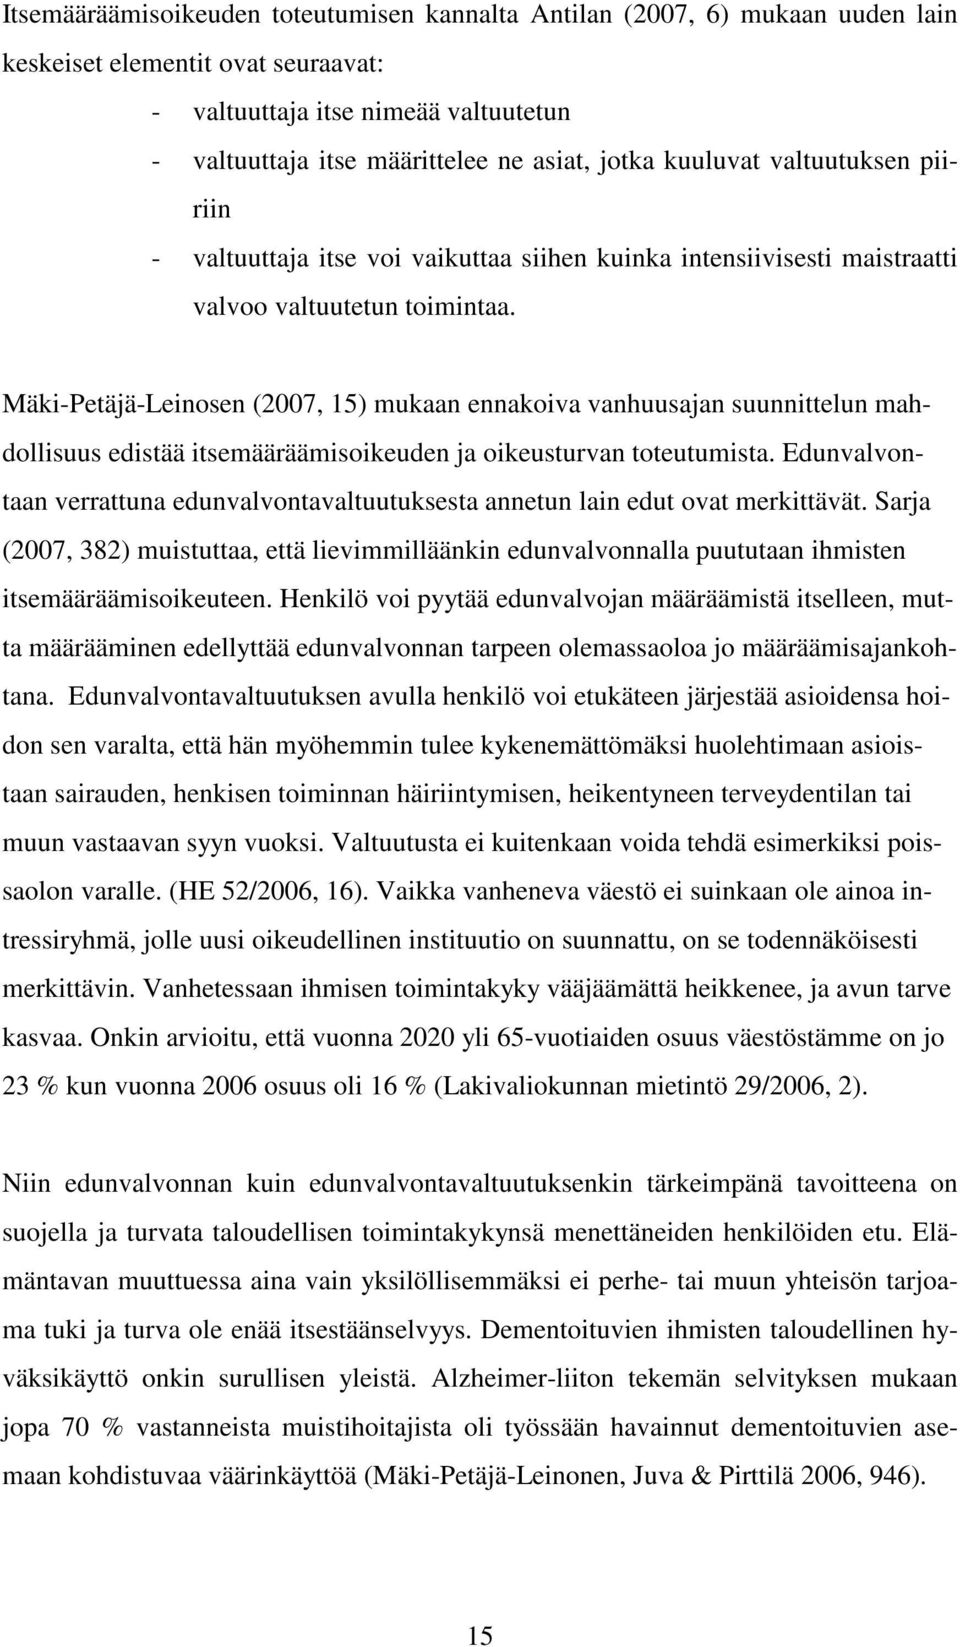 Mäki-Petäjä-Leinosen (2007, 15) mukaan ennakoiva vanhuusajan suunnittelun mahdollisuus edistää itsemääräämisoikeuden ja oikeusturvan toteutumista.